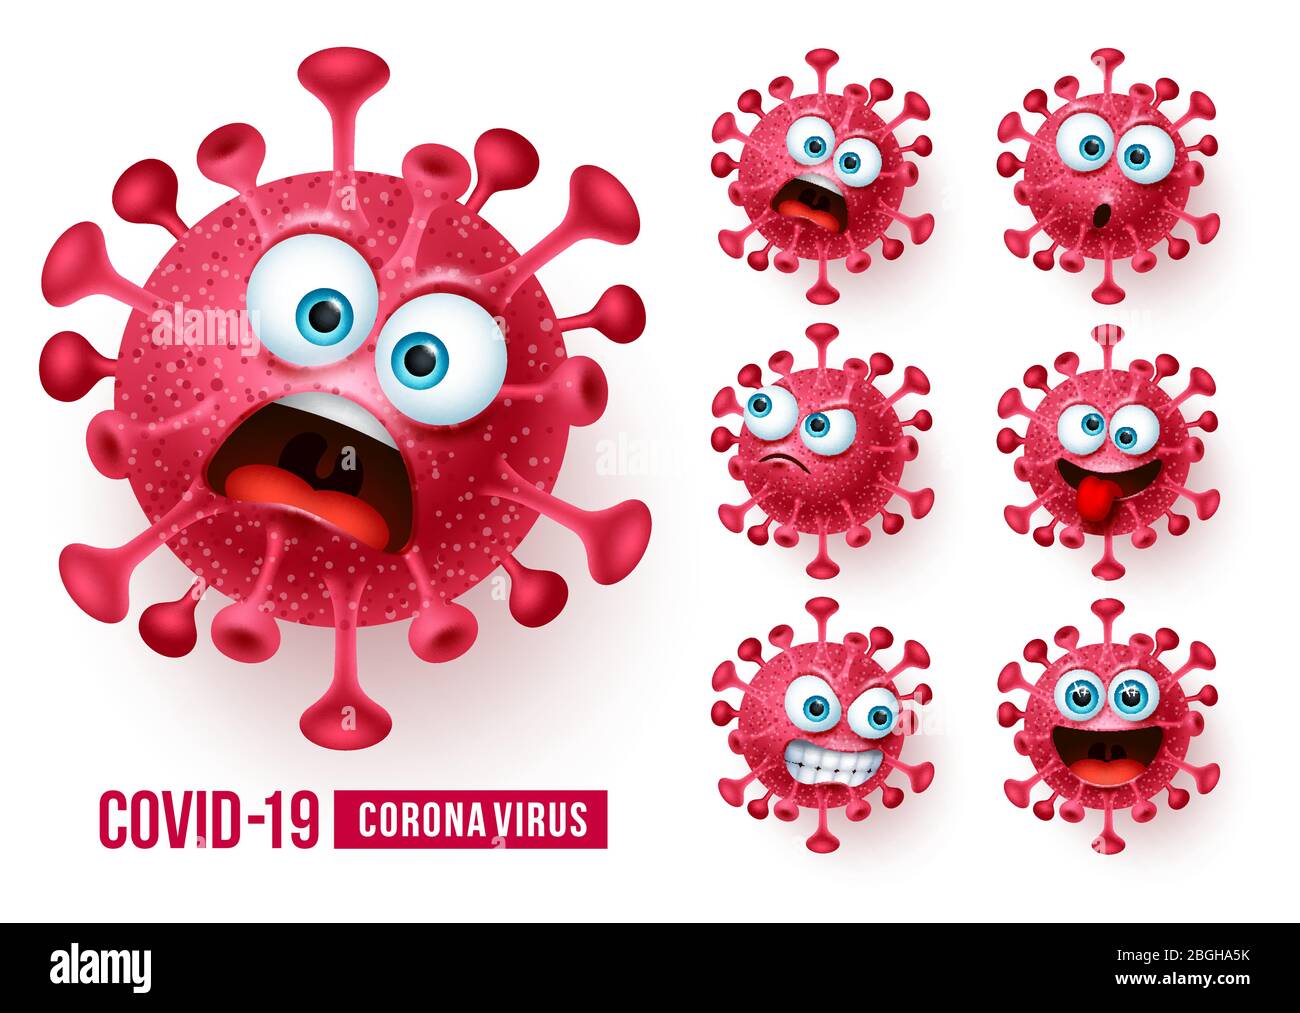 Covid19 Corona Virus Emojis Vektor-Set. Covid-19 Coronavirus Emojis und Emoticons mit gruseligen und wütenden Gesichtsausdrücken in weißem Hintergrund. Stock Vektor